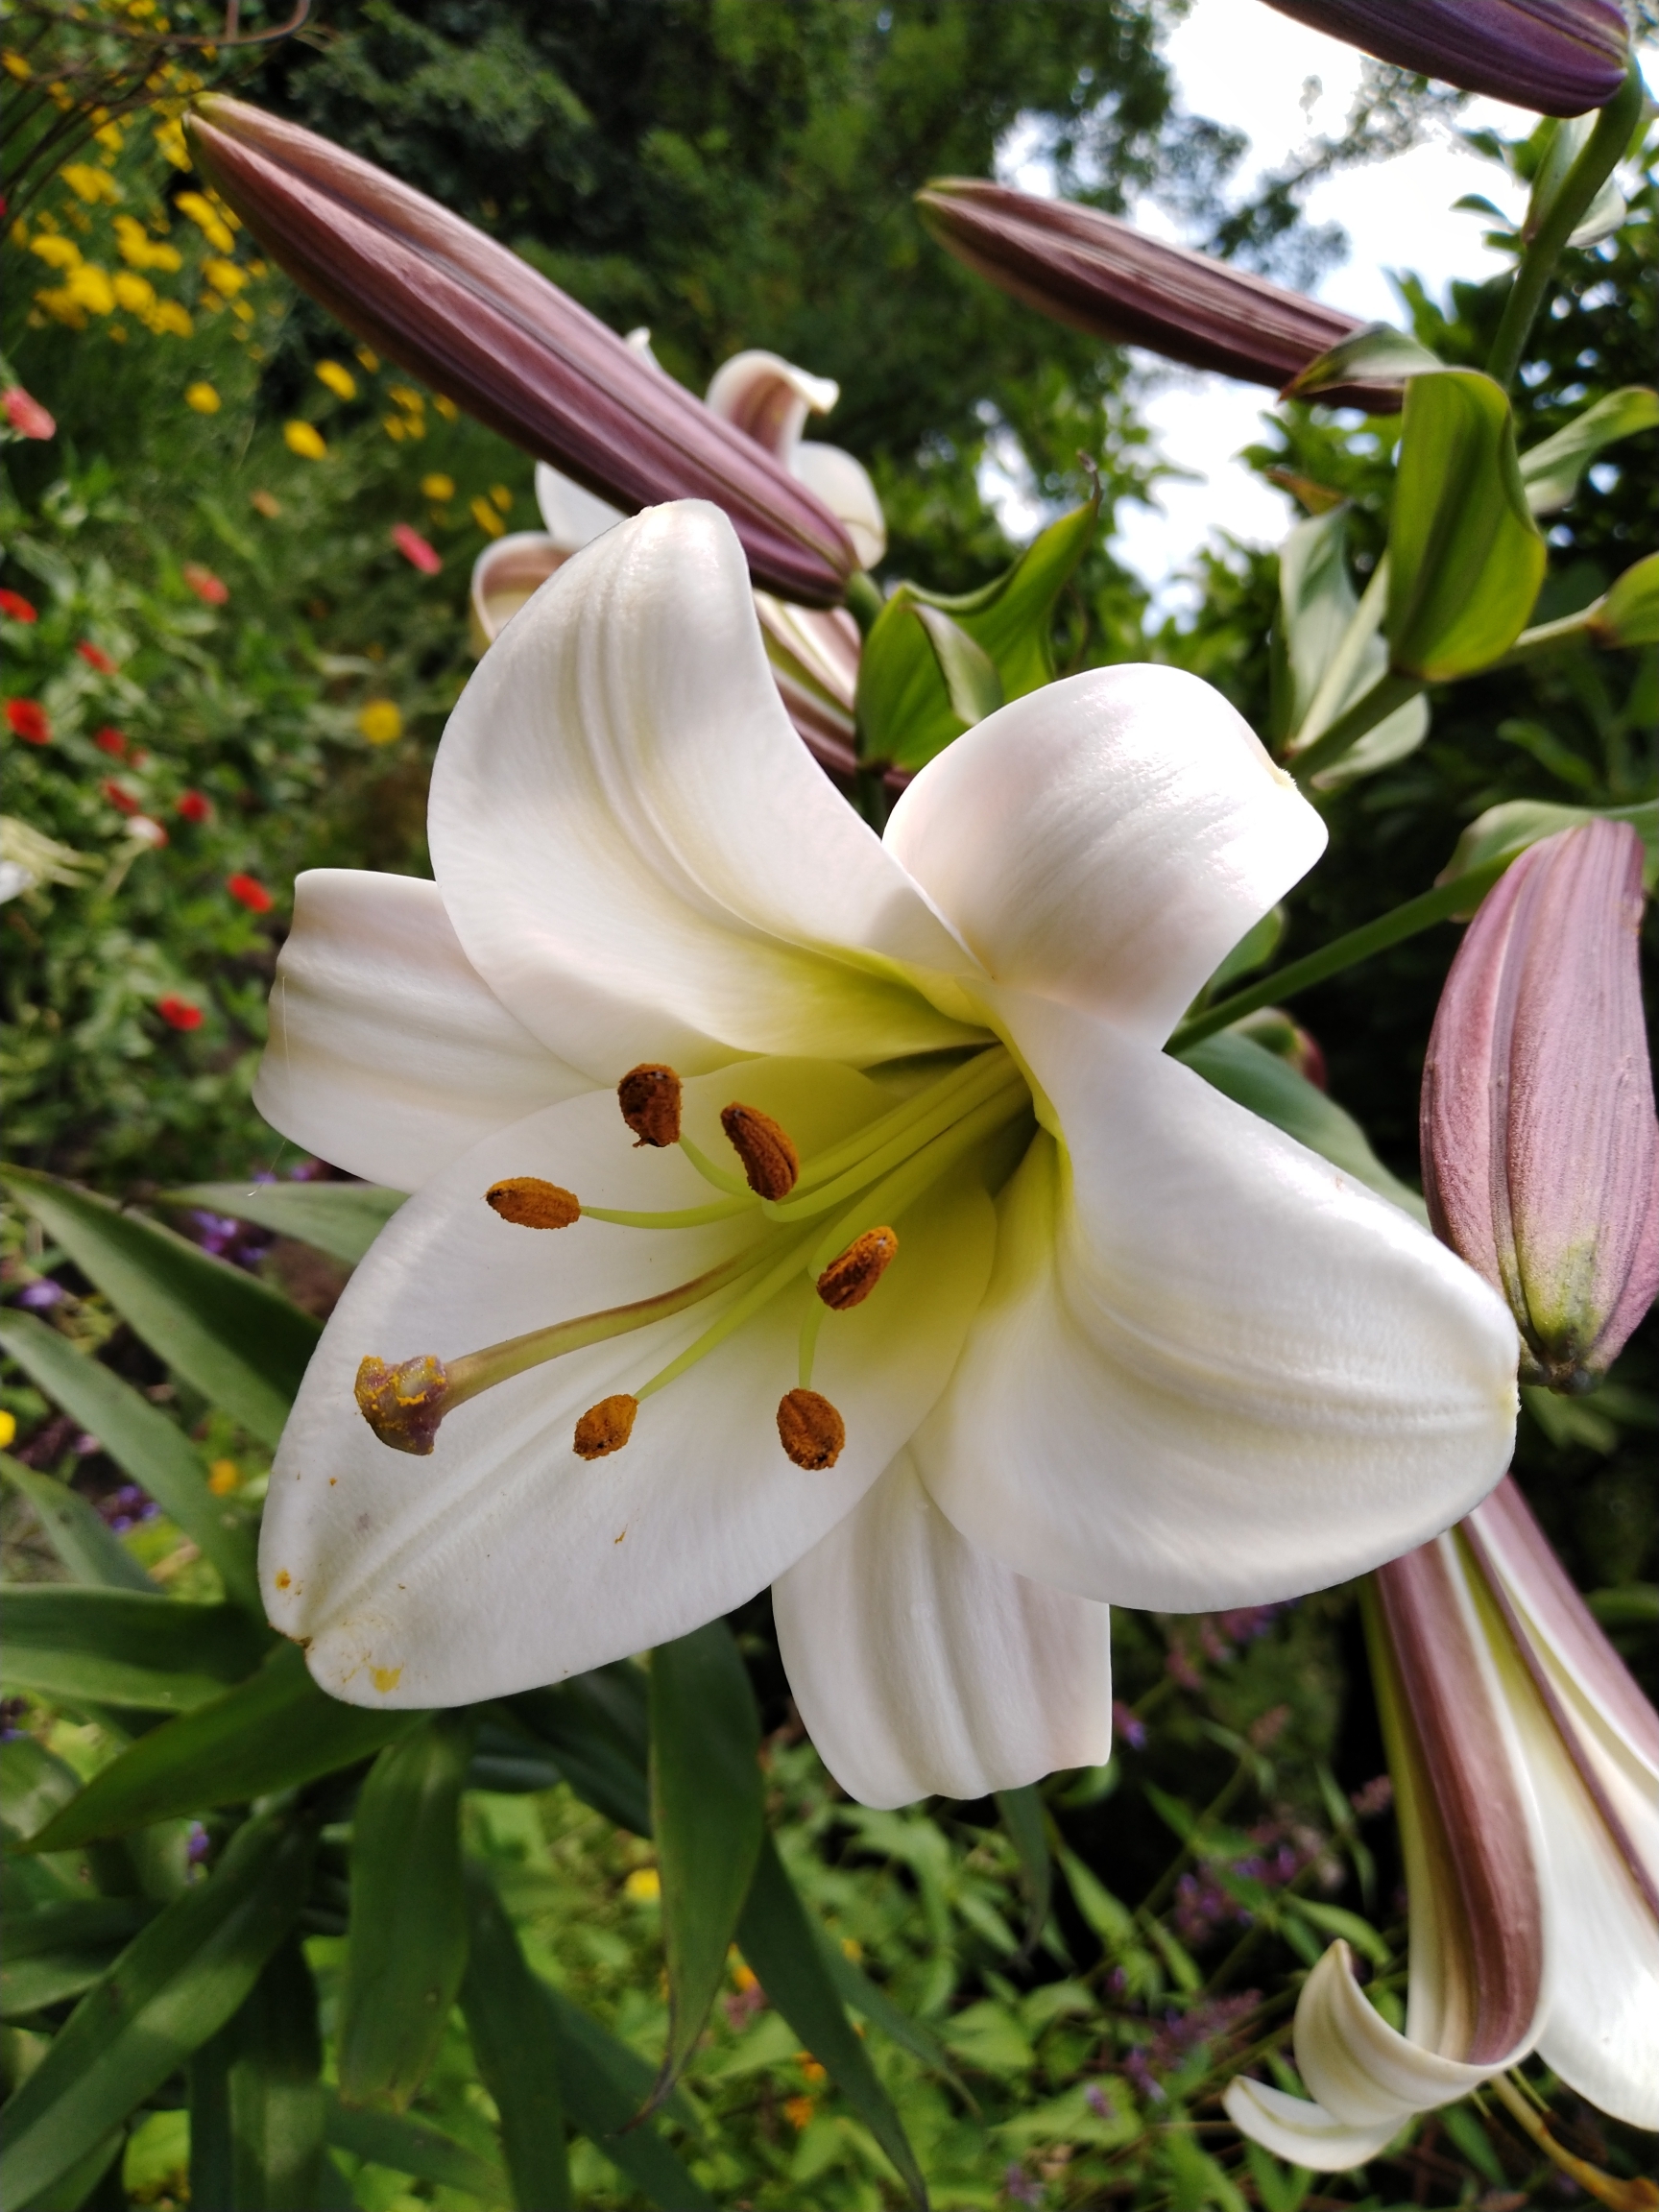 萱草花跟前面的介绍过的第四种有些相近,它也是由绸缎般的白色花瓣为